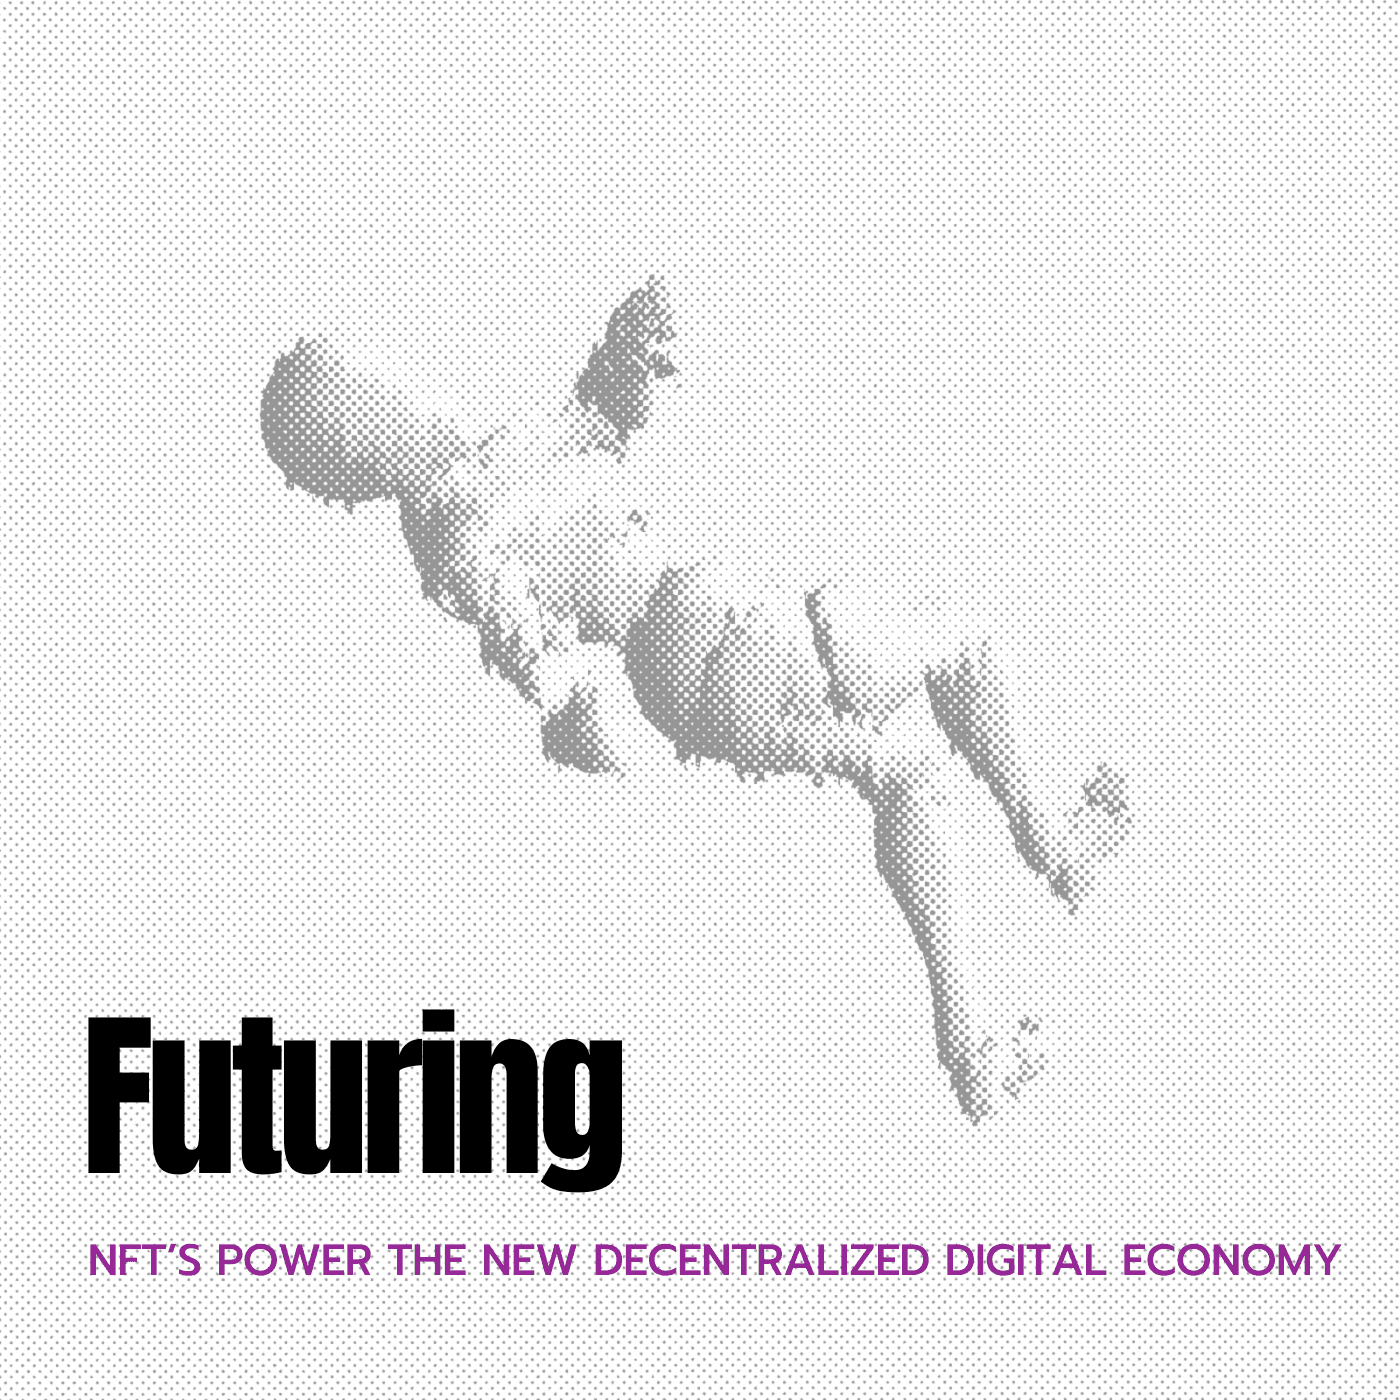 NFT's Power The New Decentralized Digital Economy